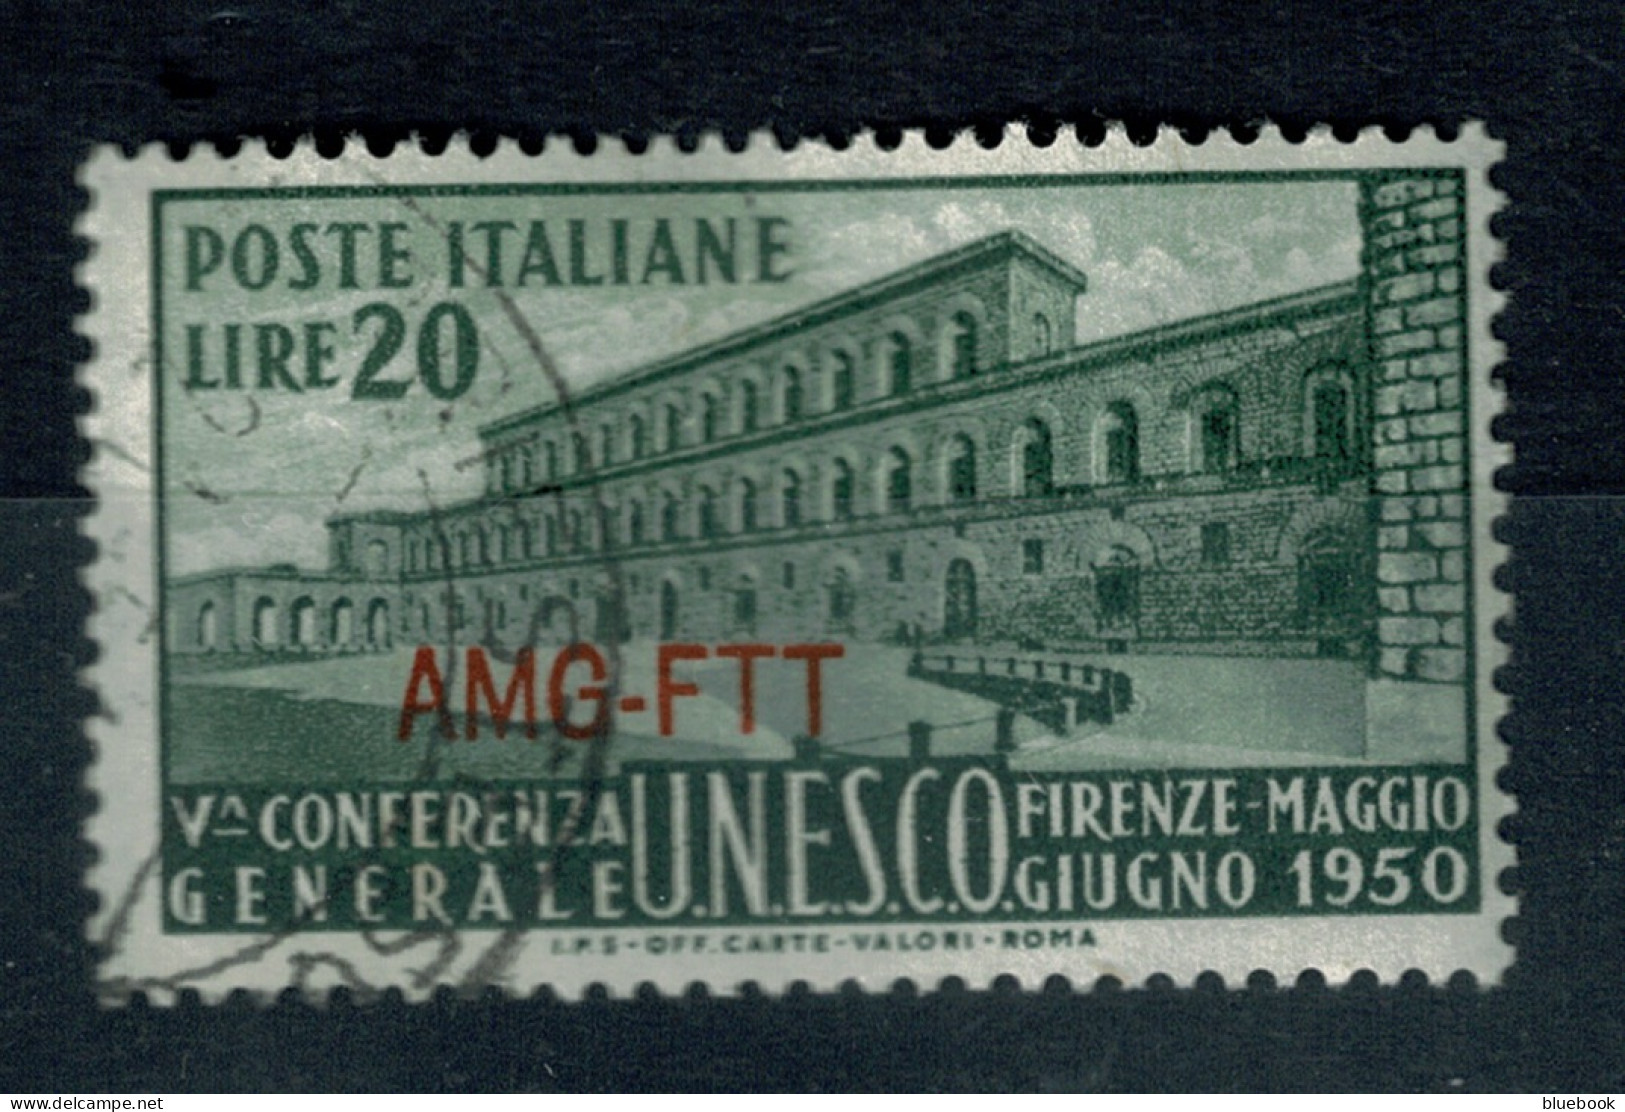 Ref 1612 - 1950 Italy  Treiste Zone A - Unesco L20 Fine Used  Stamp Sass. 71  - Gebraucht